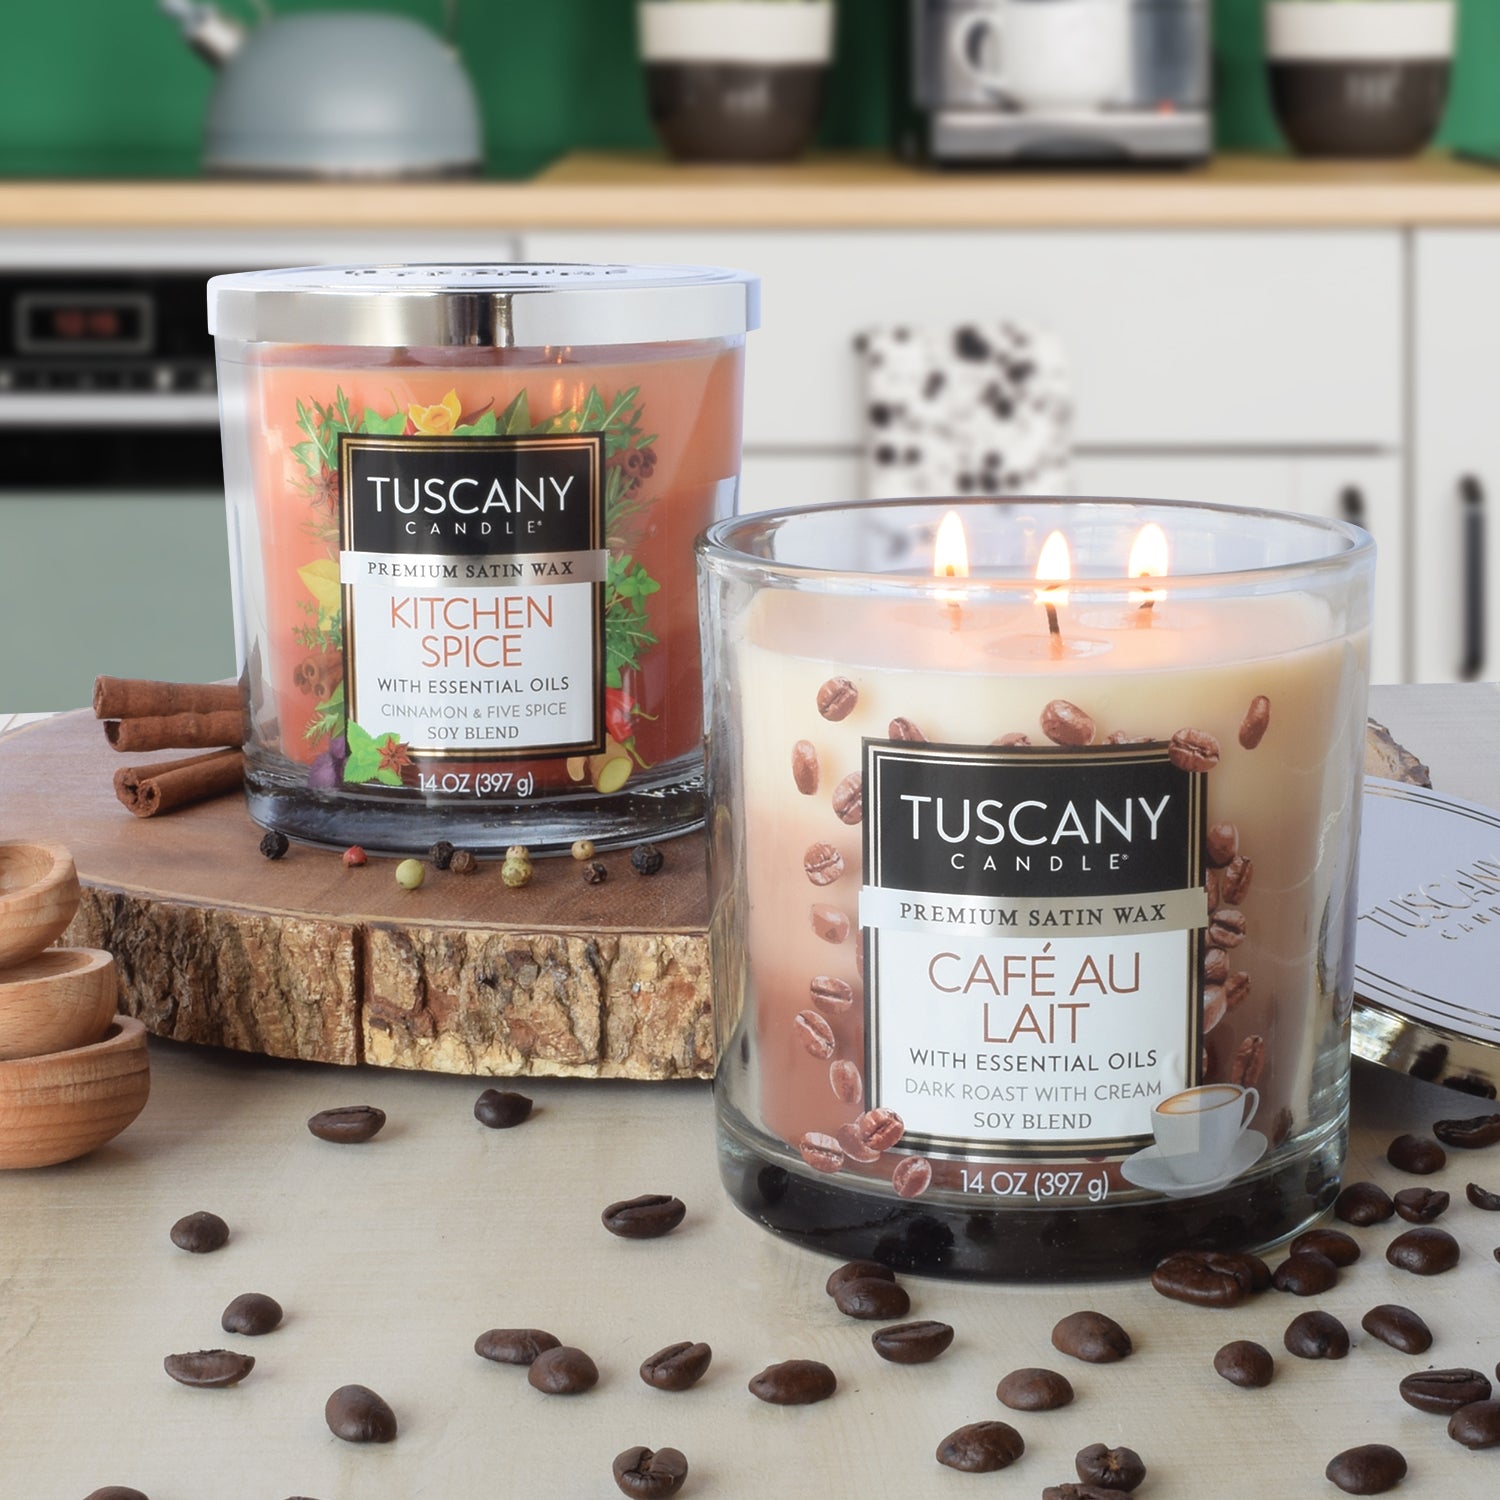 Tuscany Candle Candle, Cafe Au Lait - 1 candle, 14 oz